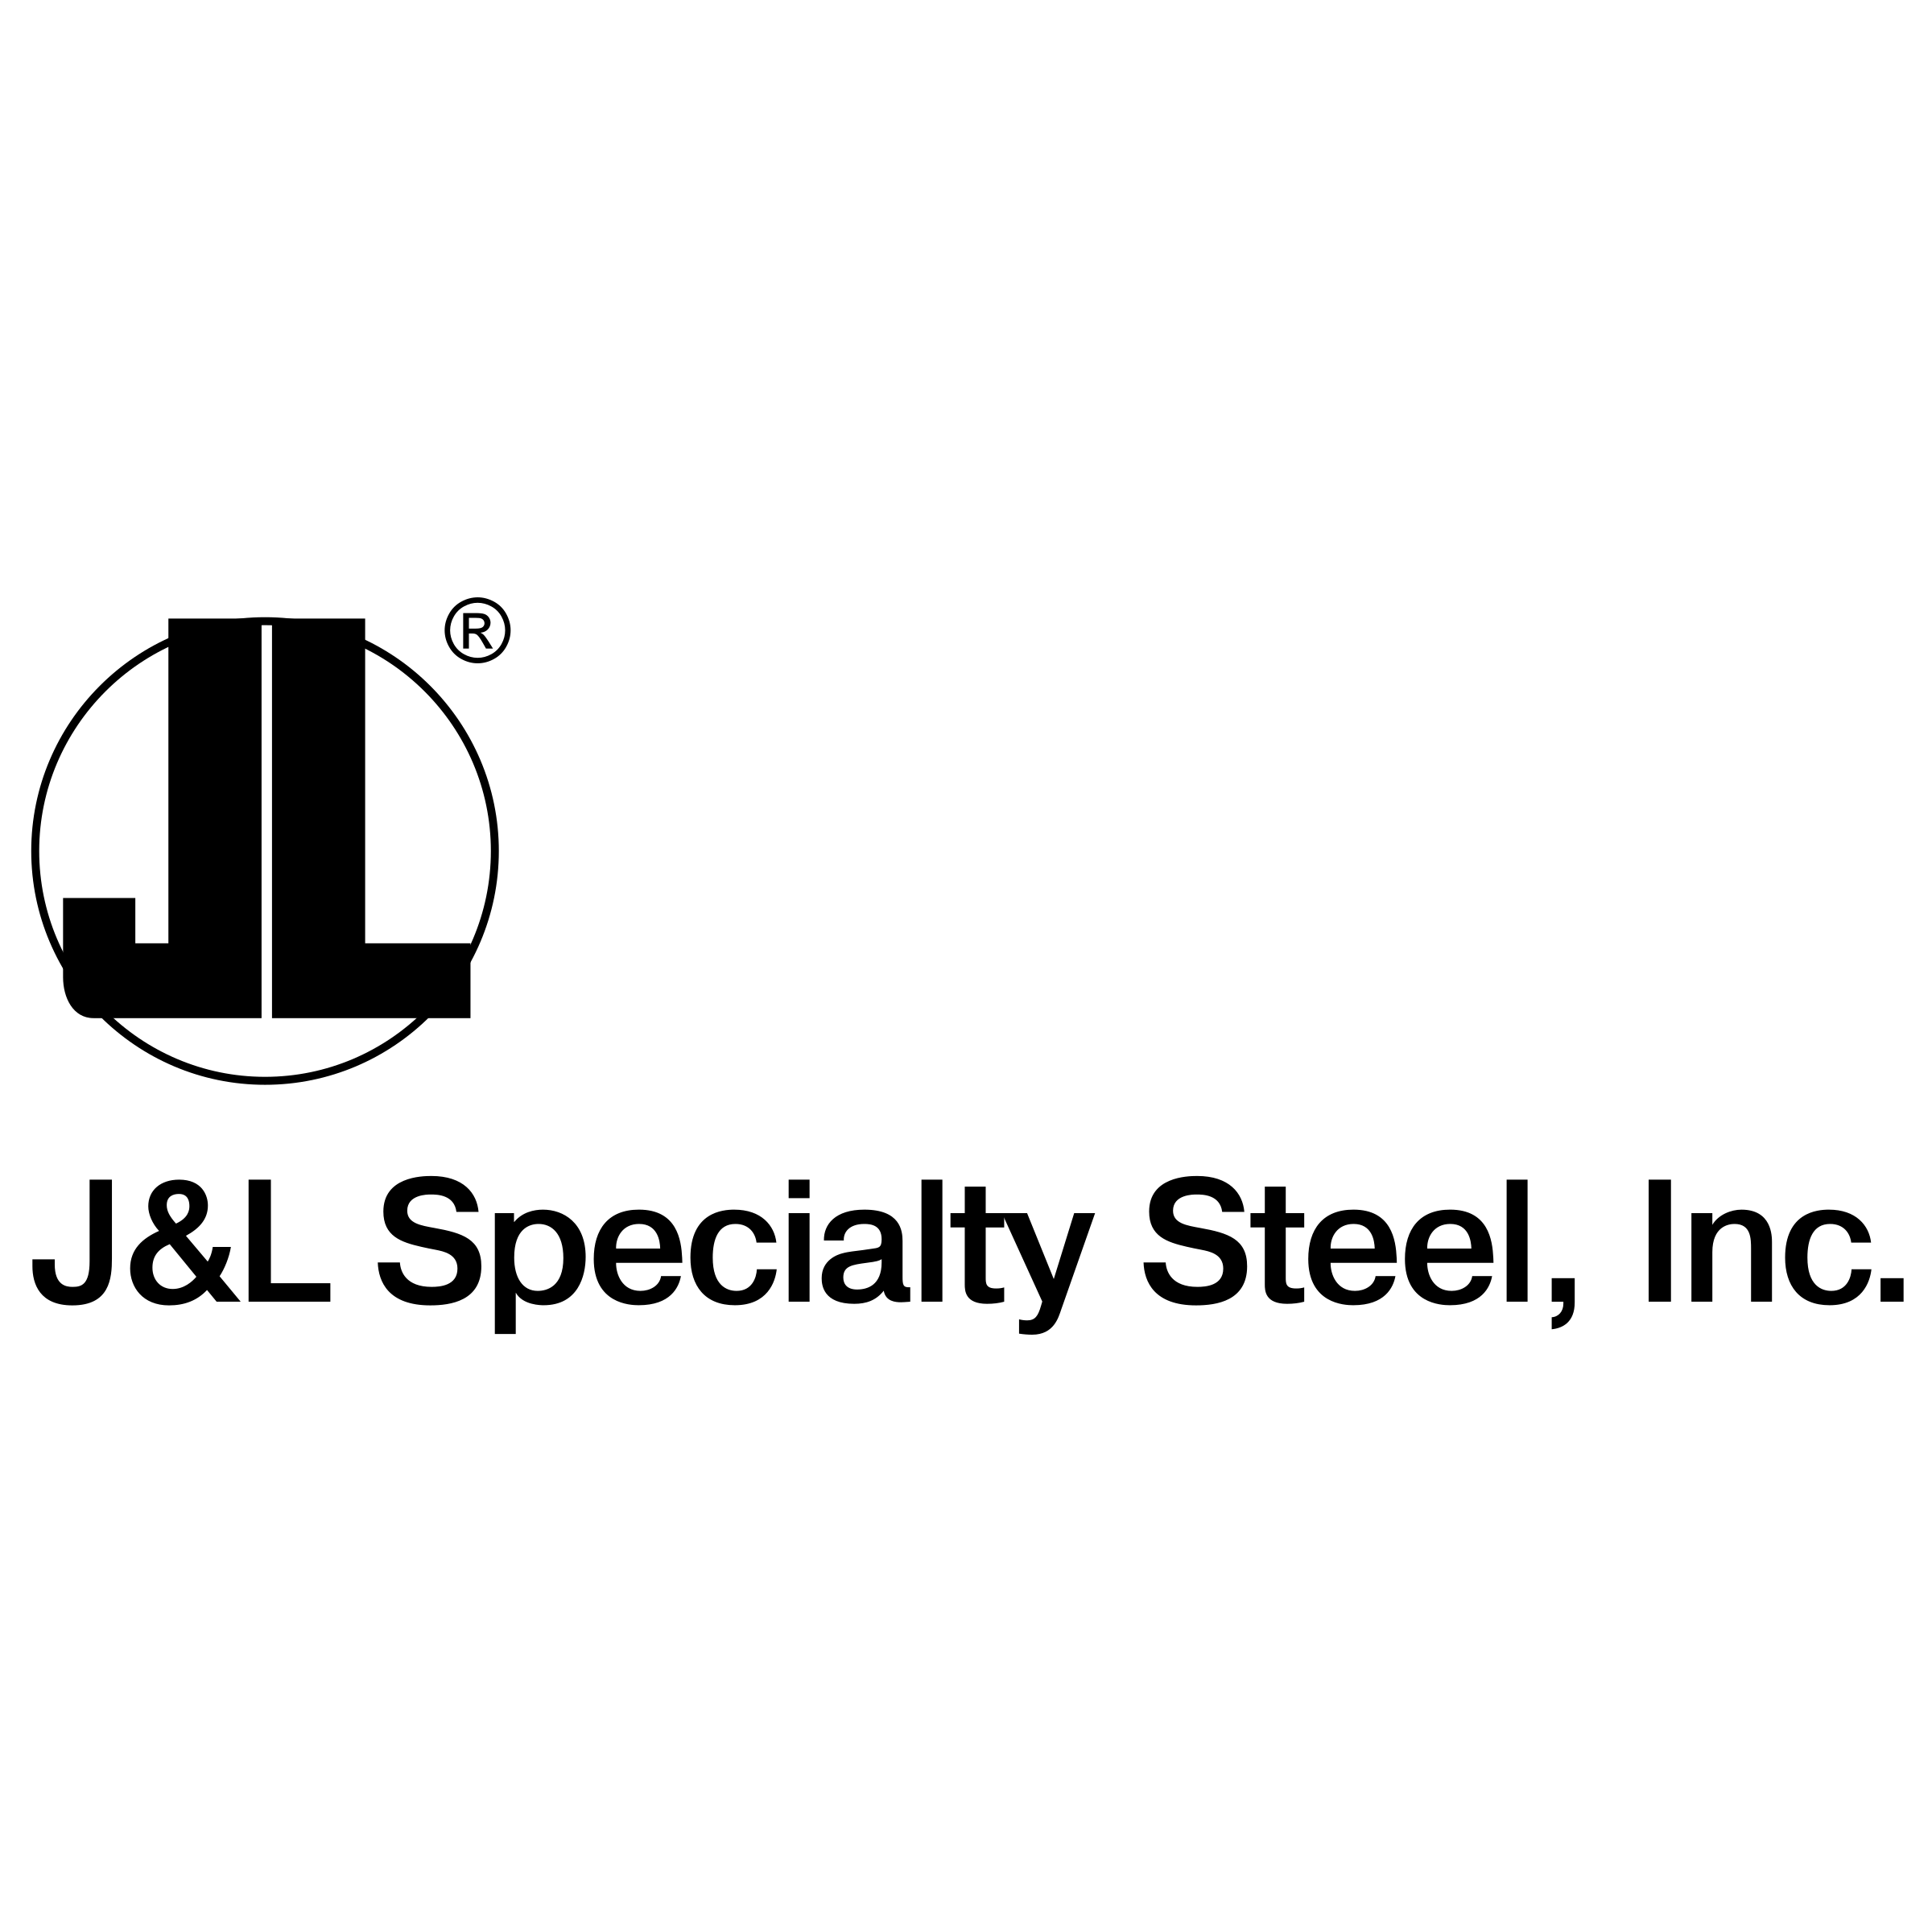 J& L Logo - J&L Specialty Steel Logo PNG Transparent & SVG Vector - Freebie Supply